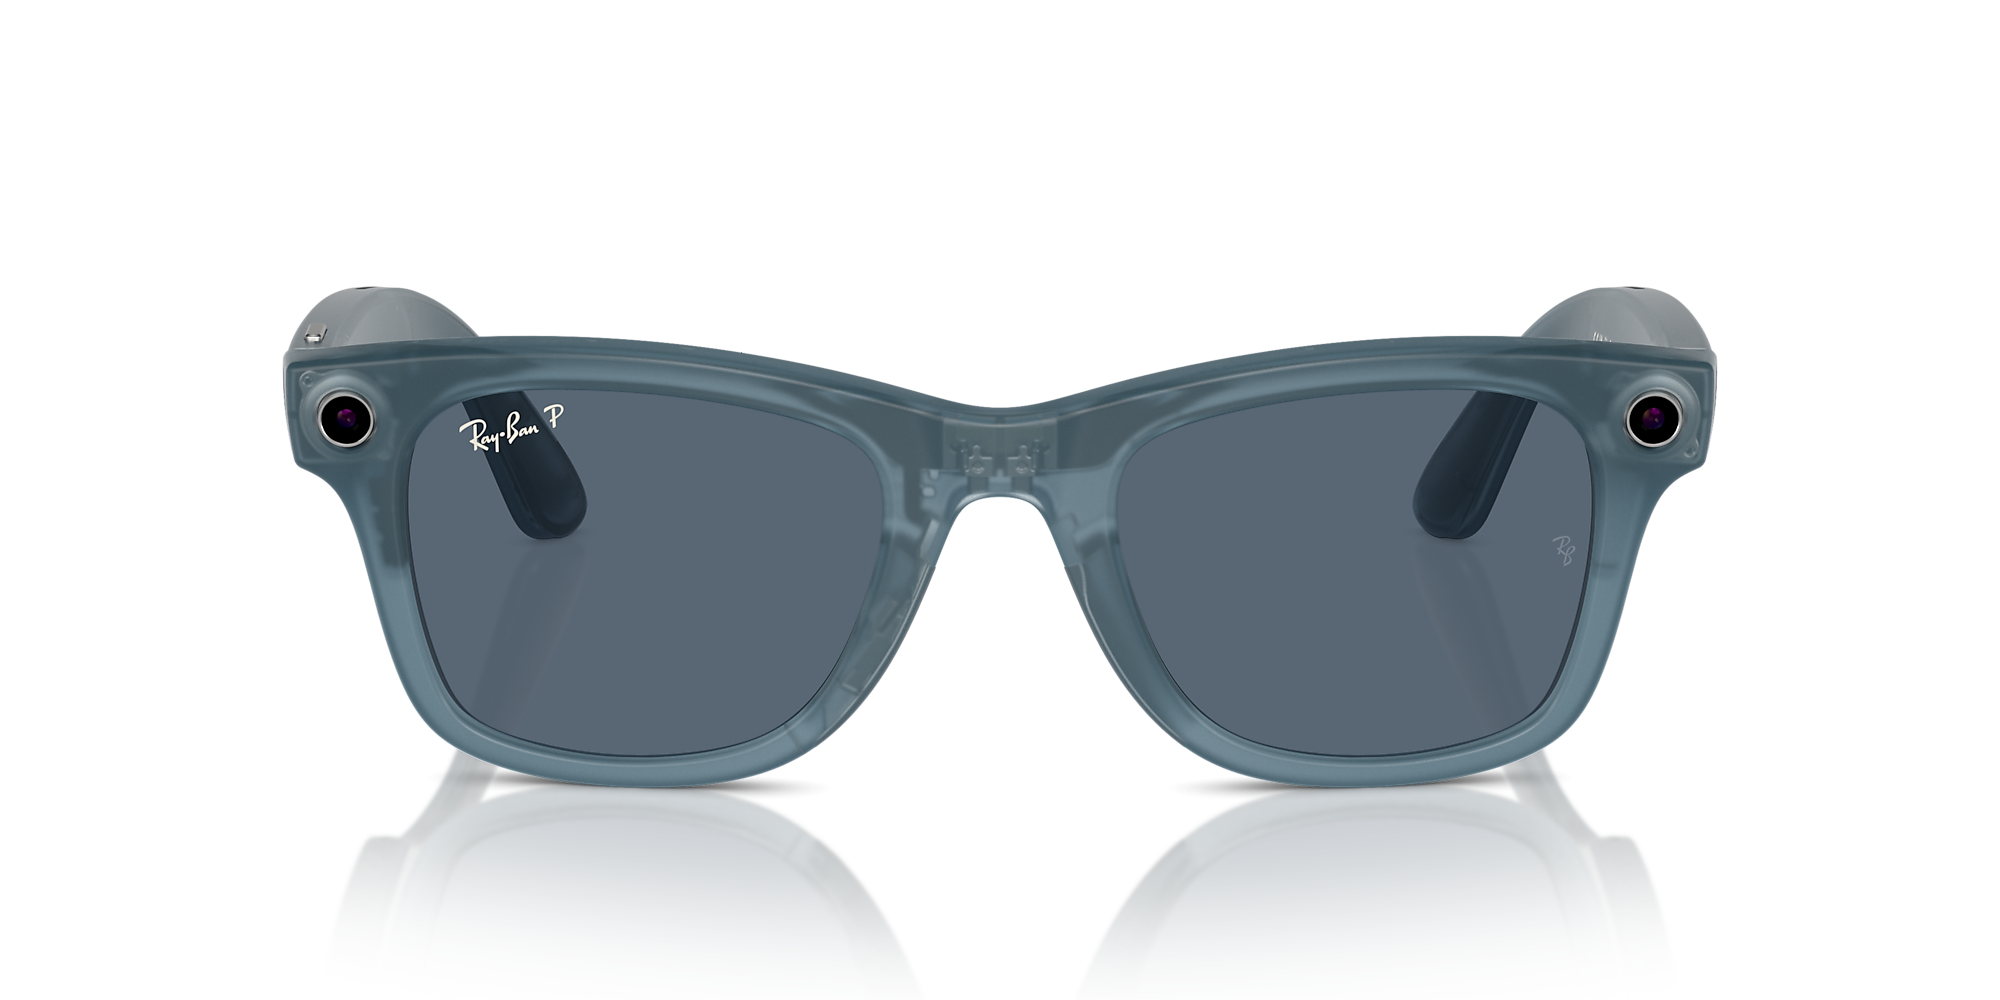 Come funzionano gli smart glasses Ray Ban e non solo